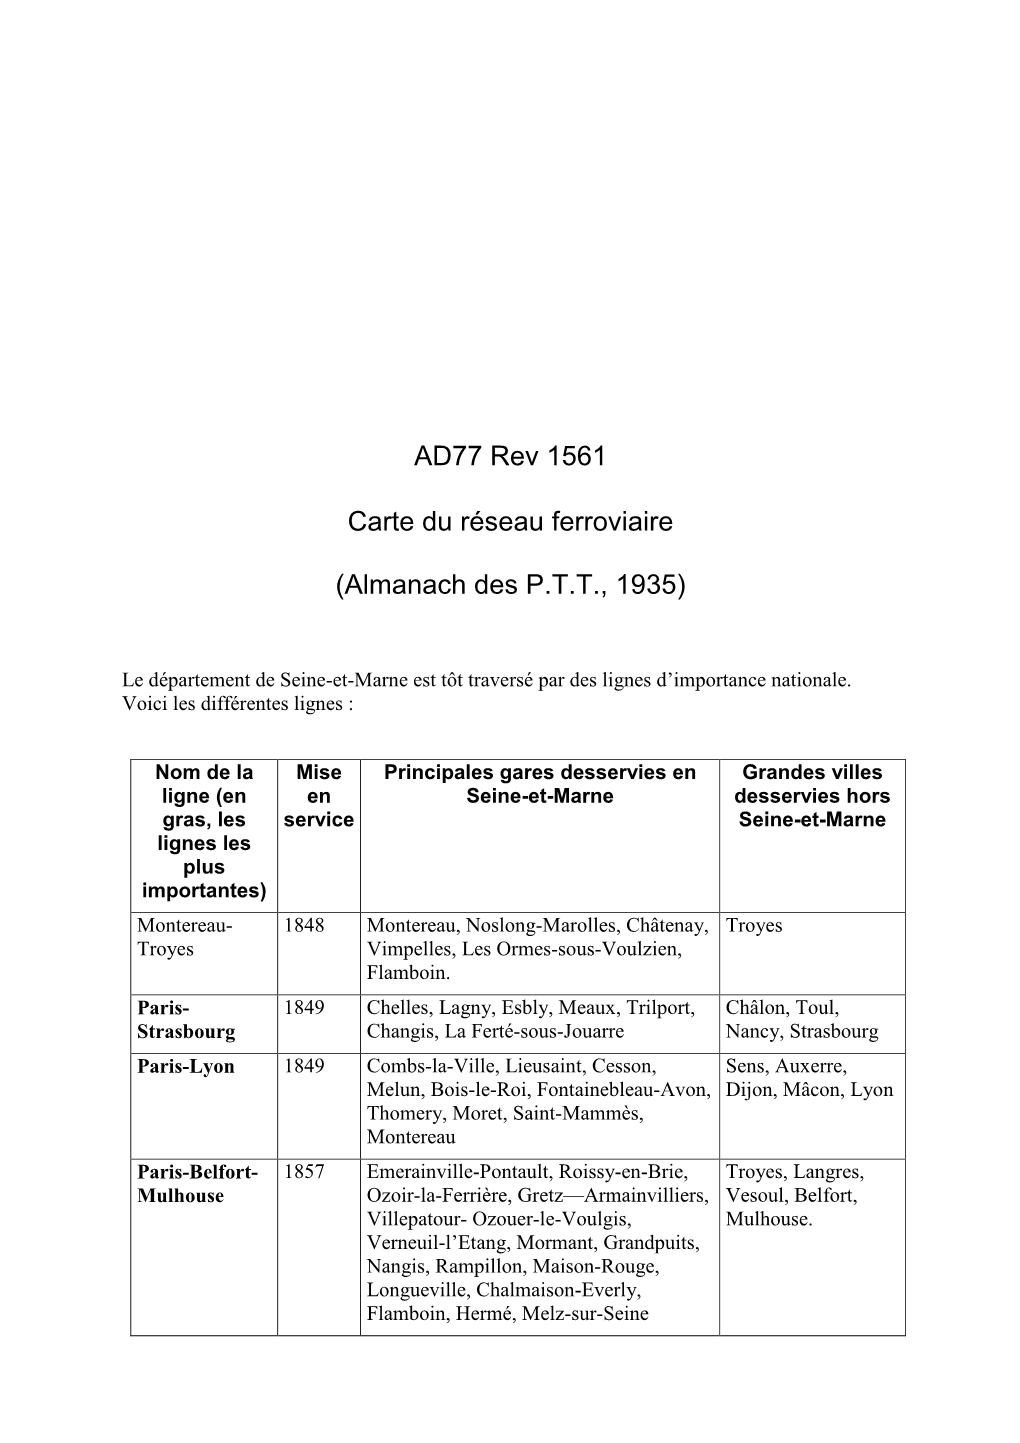 AD77 Rev 1561 Carte Du Réseau Ferroviaire